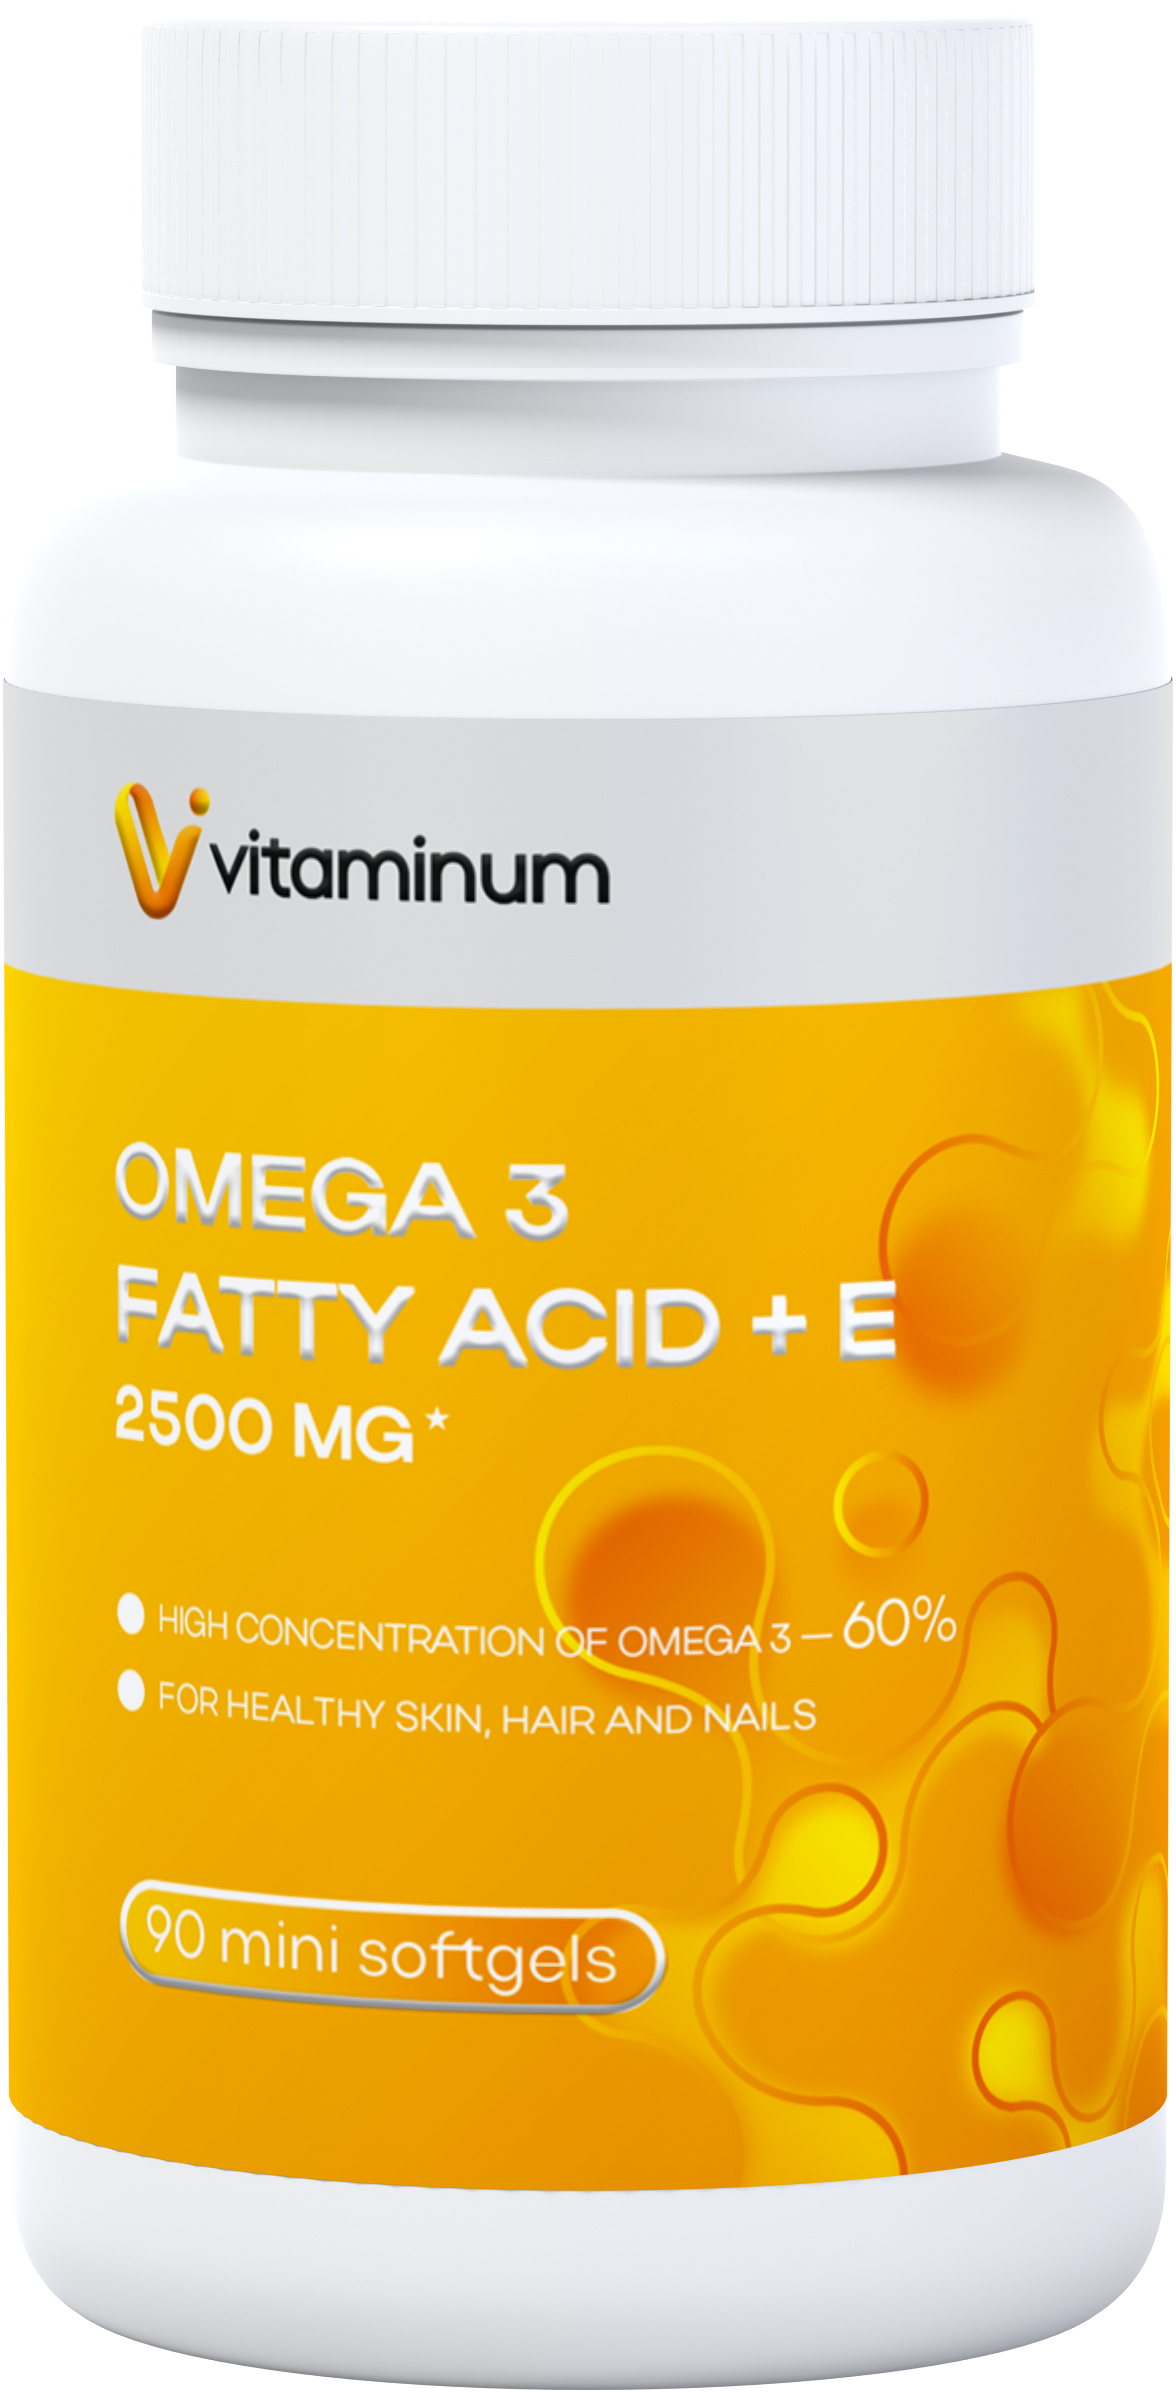  Vitaminum ОМЕГА 3 60% + витамин Е (2500 MG*) 90 капсул 700 мг   в Таганроге